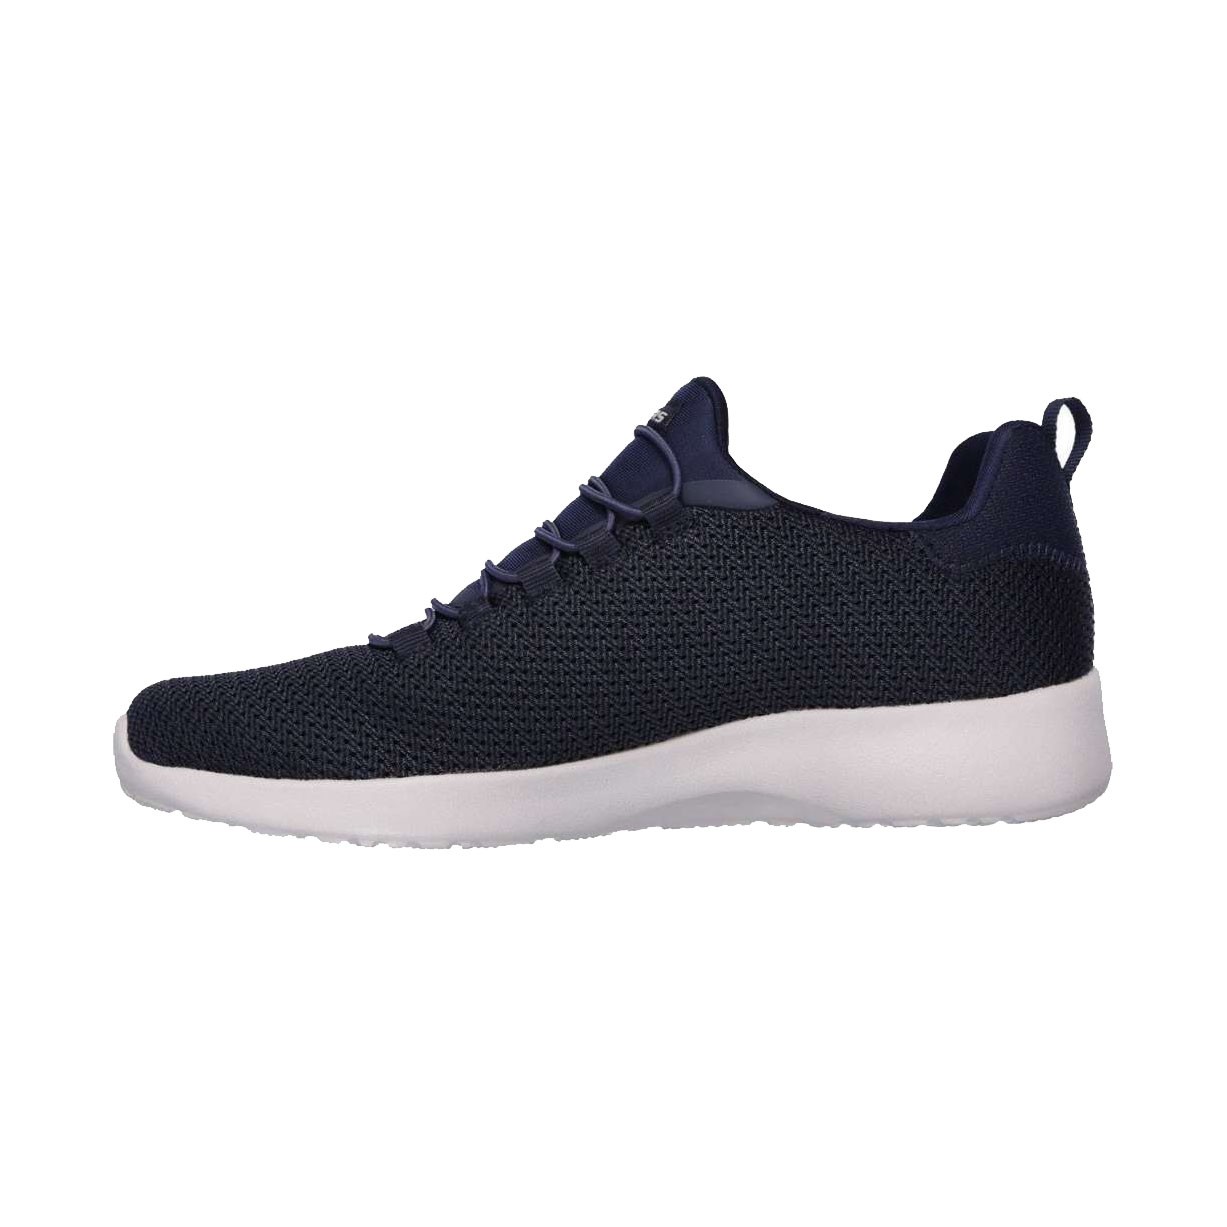 Skechers Dynamight 58360/NVY Ανδρικό Sneaker Slip On Μπλε